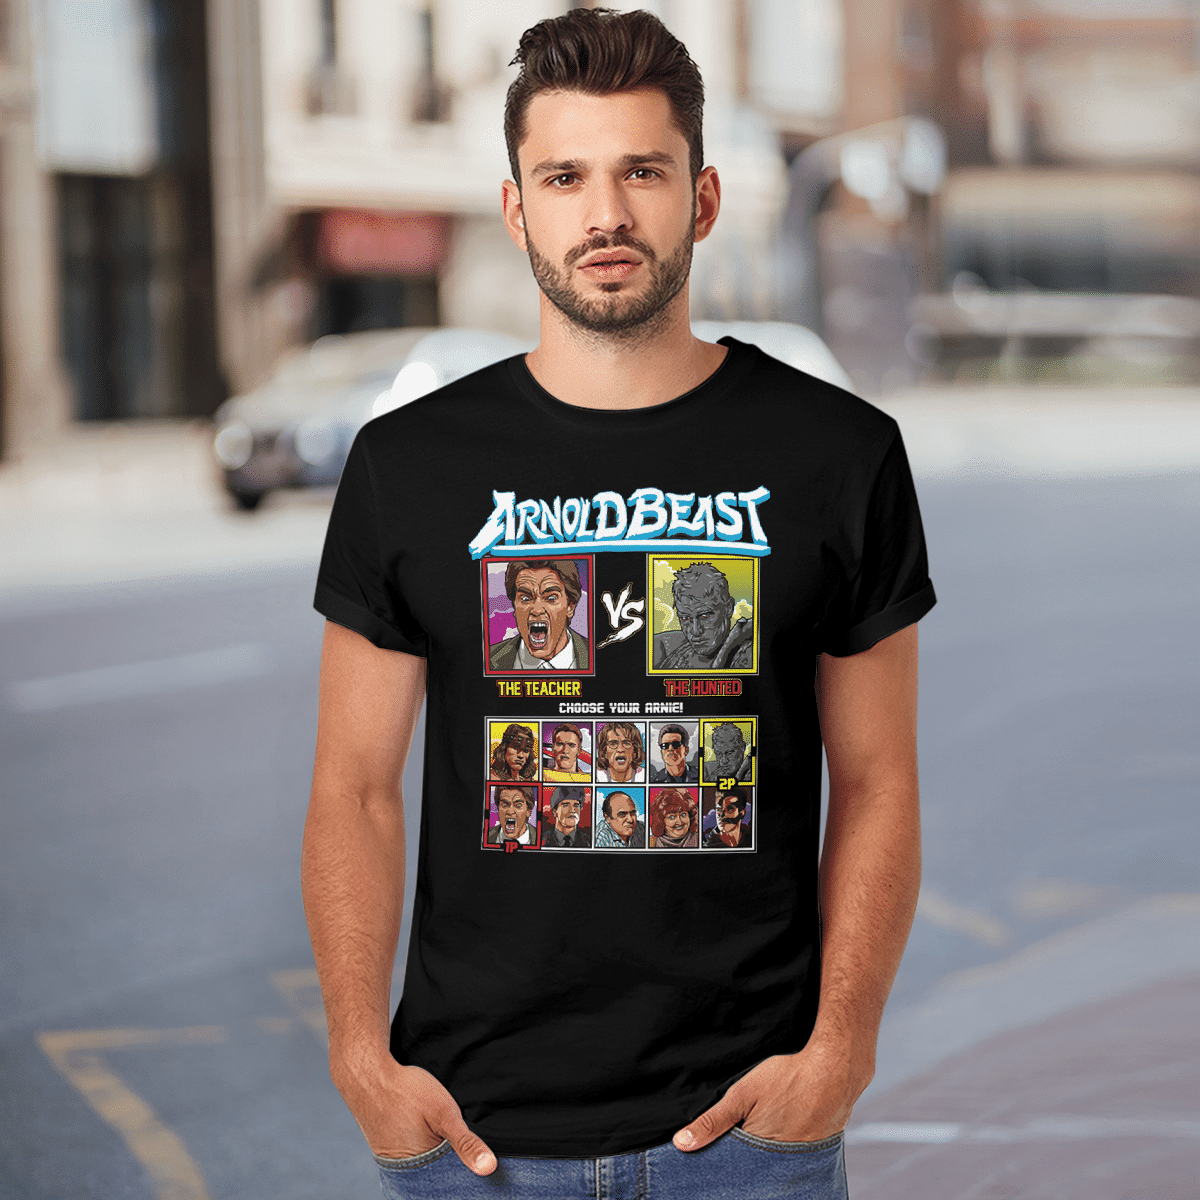 Arnoldbeast T-Shirt